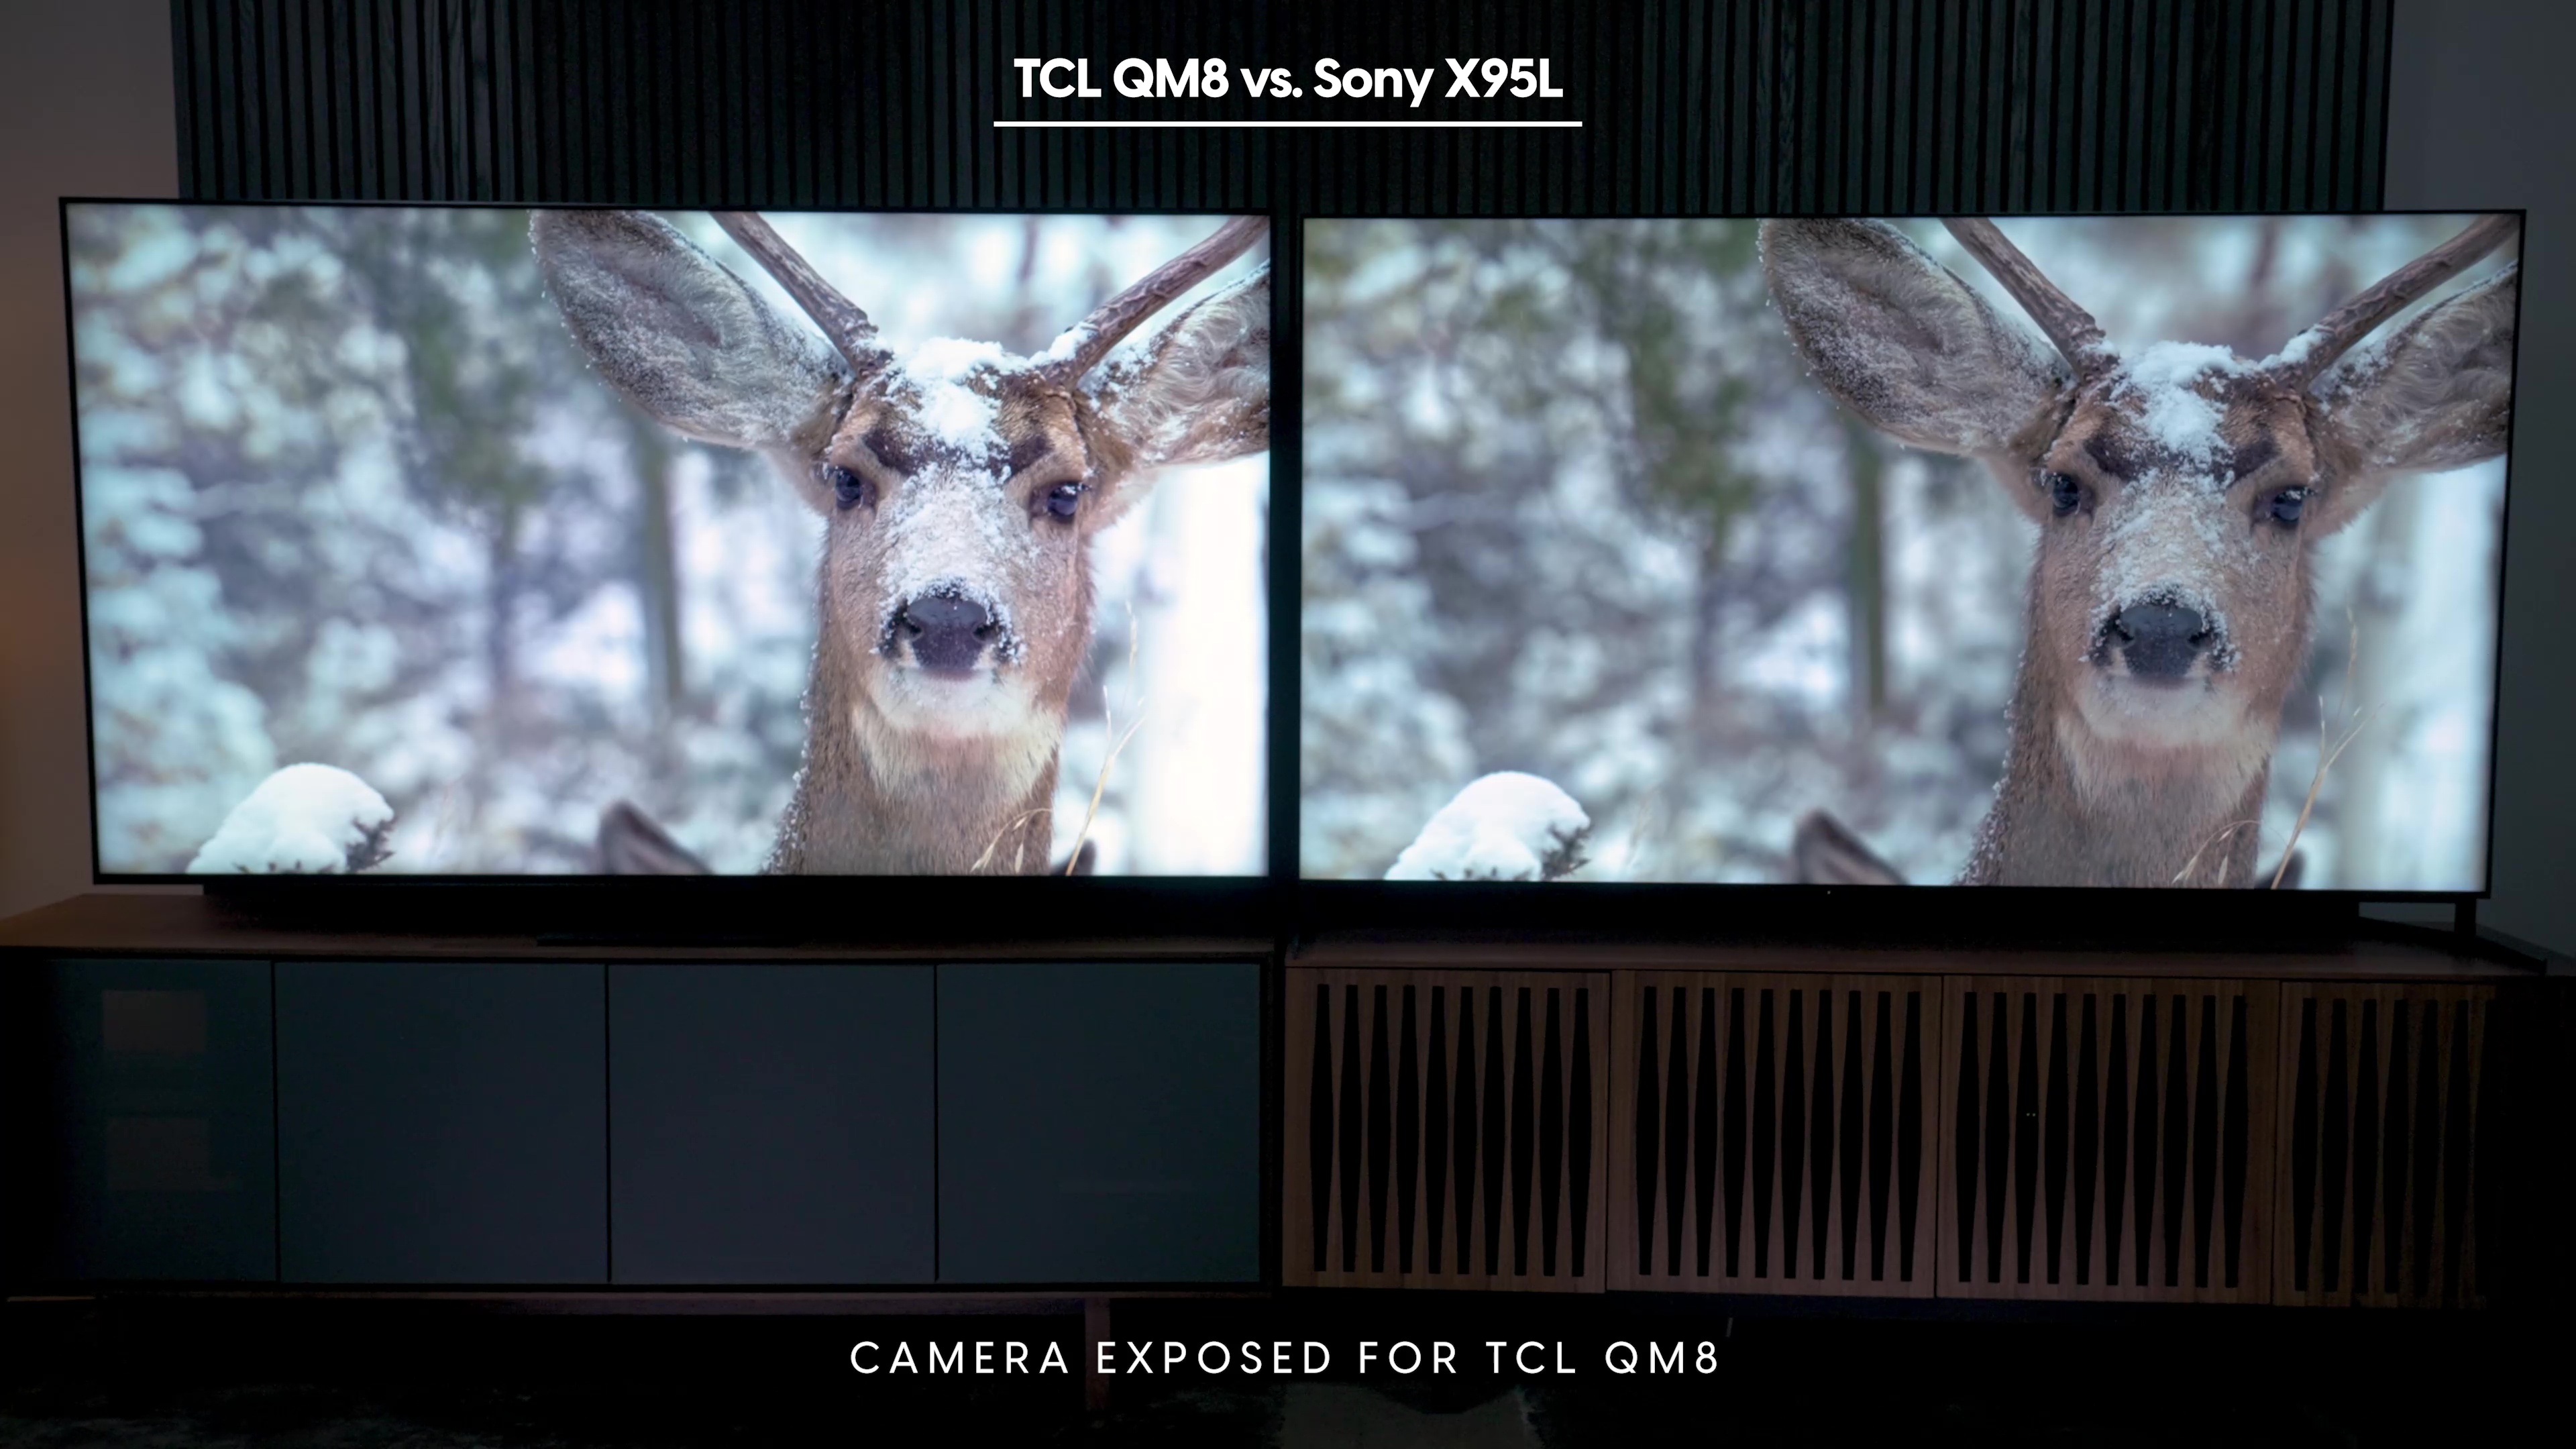 Comparación lado a lado de una escena de un ciervo en la nieve en un Sony Bravia X95L vs TCL QM8.